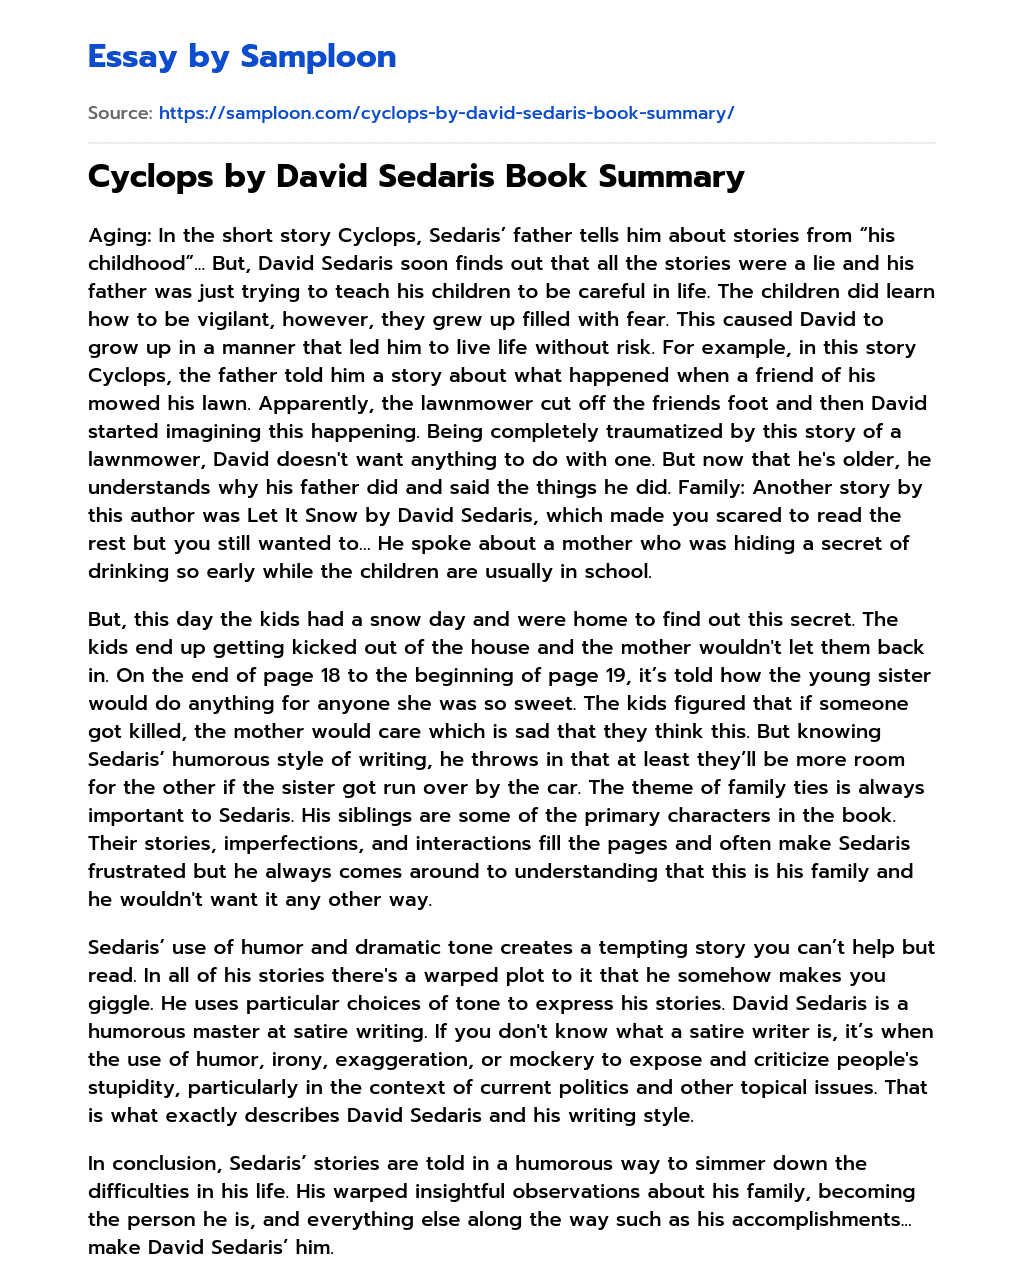 Cyclops by David Sedaris Book Summary essay